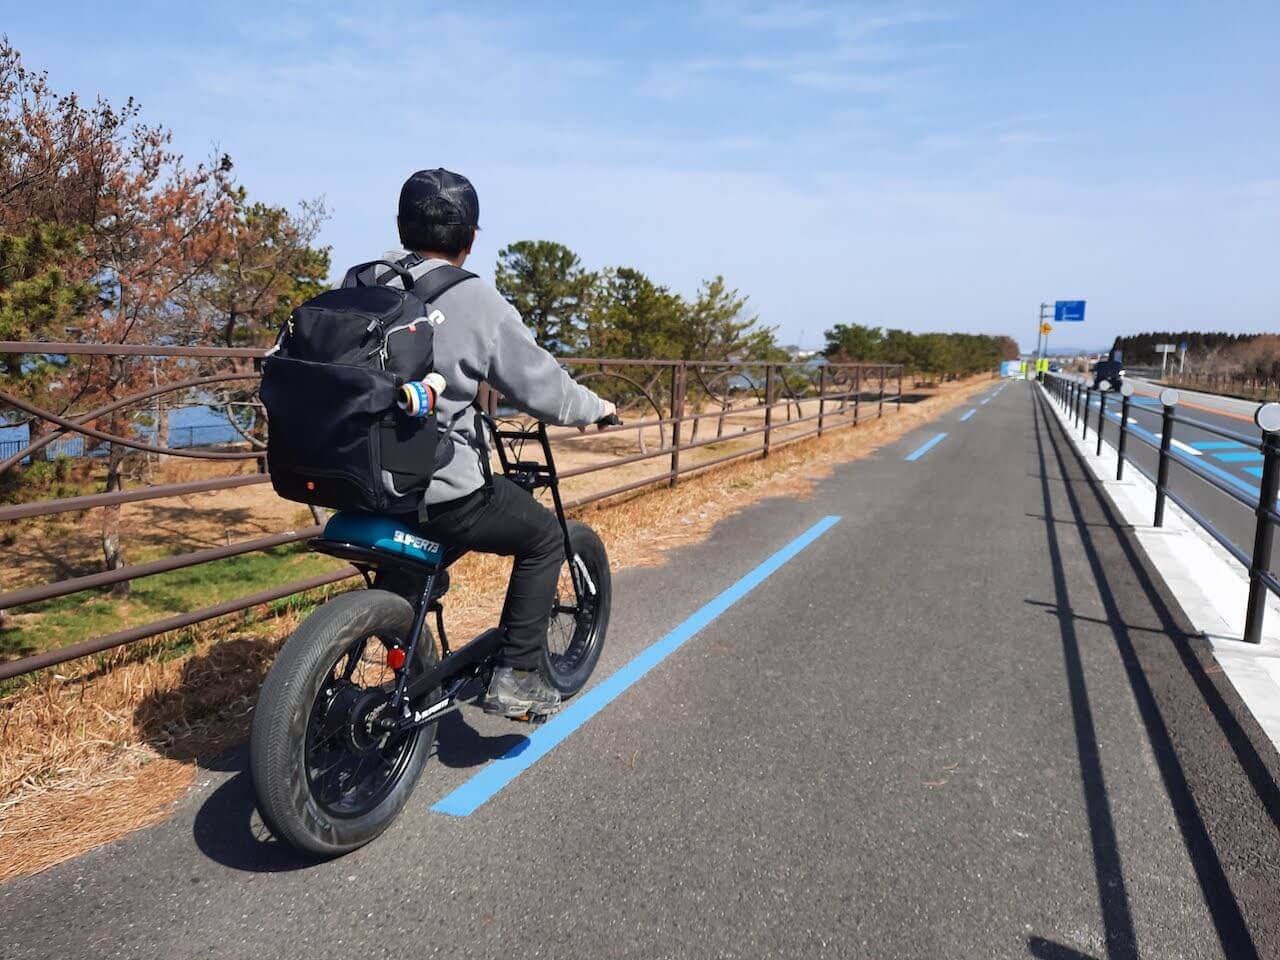 ビワイチ-Super73-電動自転車-Ebike-サイクリング-琵琶湖